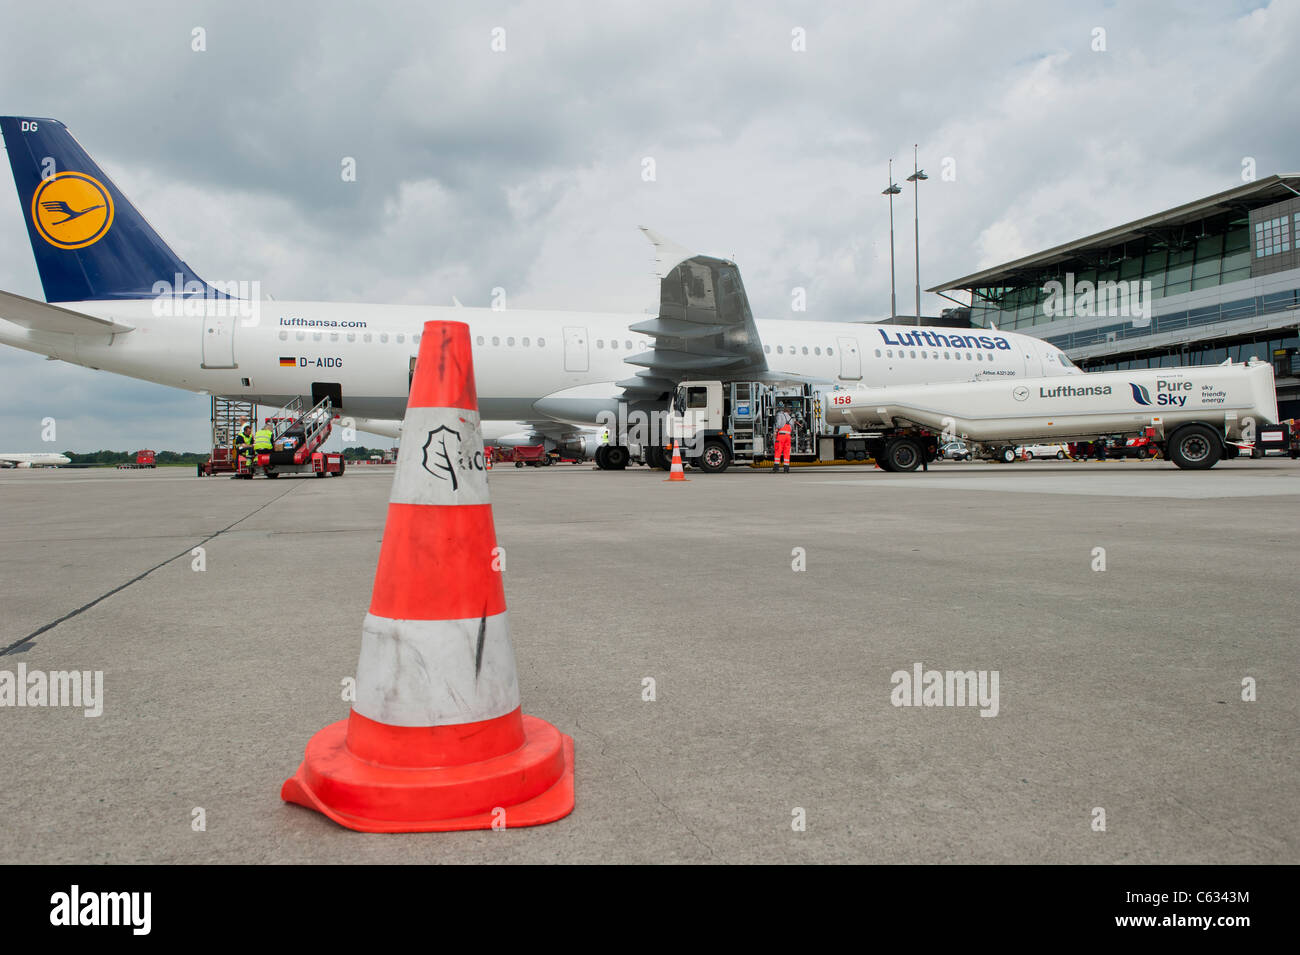 DEUTSCHLAND Flughafen Hamburg, Lufthansa Airbus A321 hat an einem Flugzeugmotor eine Mischung aus Jatropha-Öl und anderen Pflanzenölen mit reinem Sky-Biokraftstoff aufgetankt, um alternative Kraftstoffe aus nachwachsenden Rohstoffen zu nutzen Stockfoto